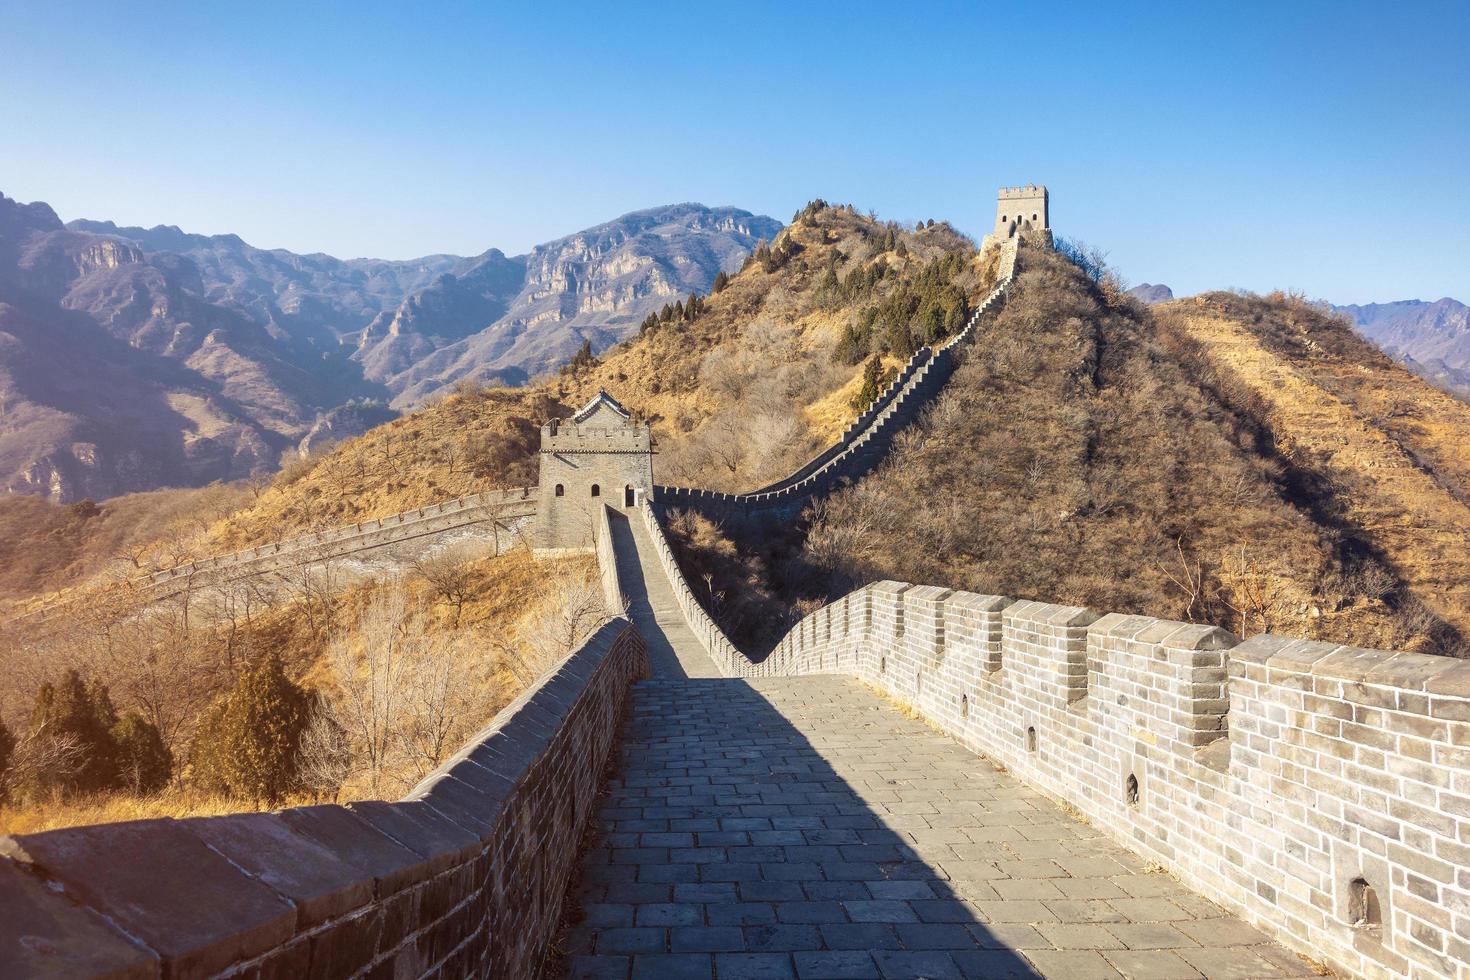 Chinesische Mauer foto